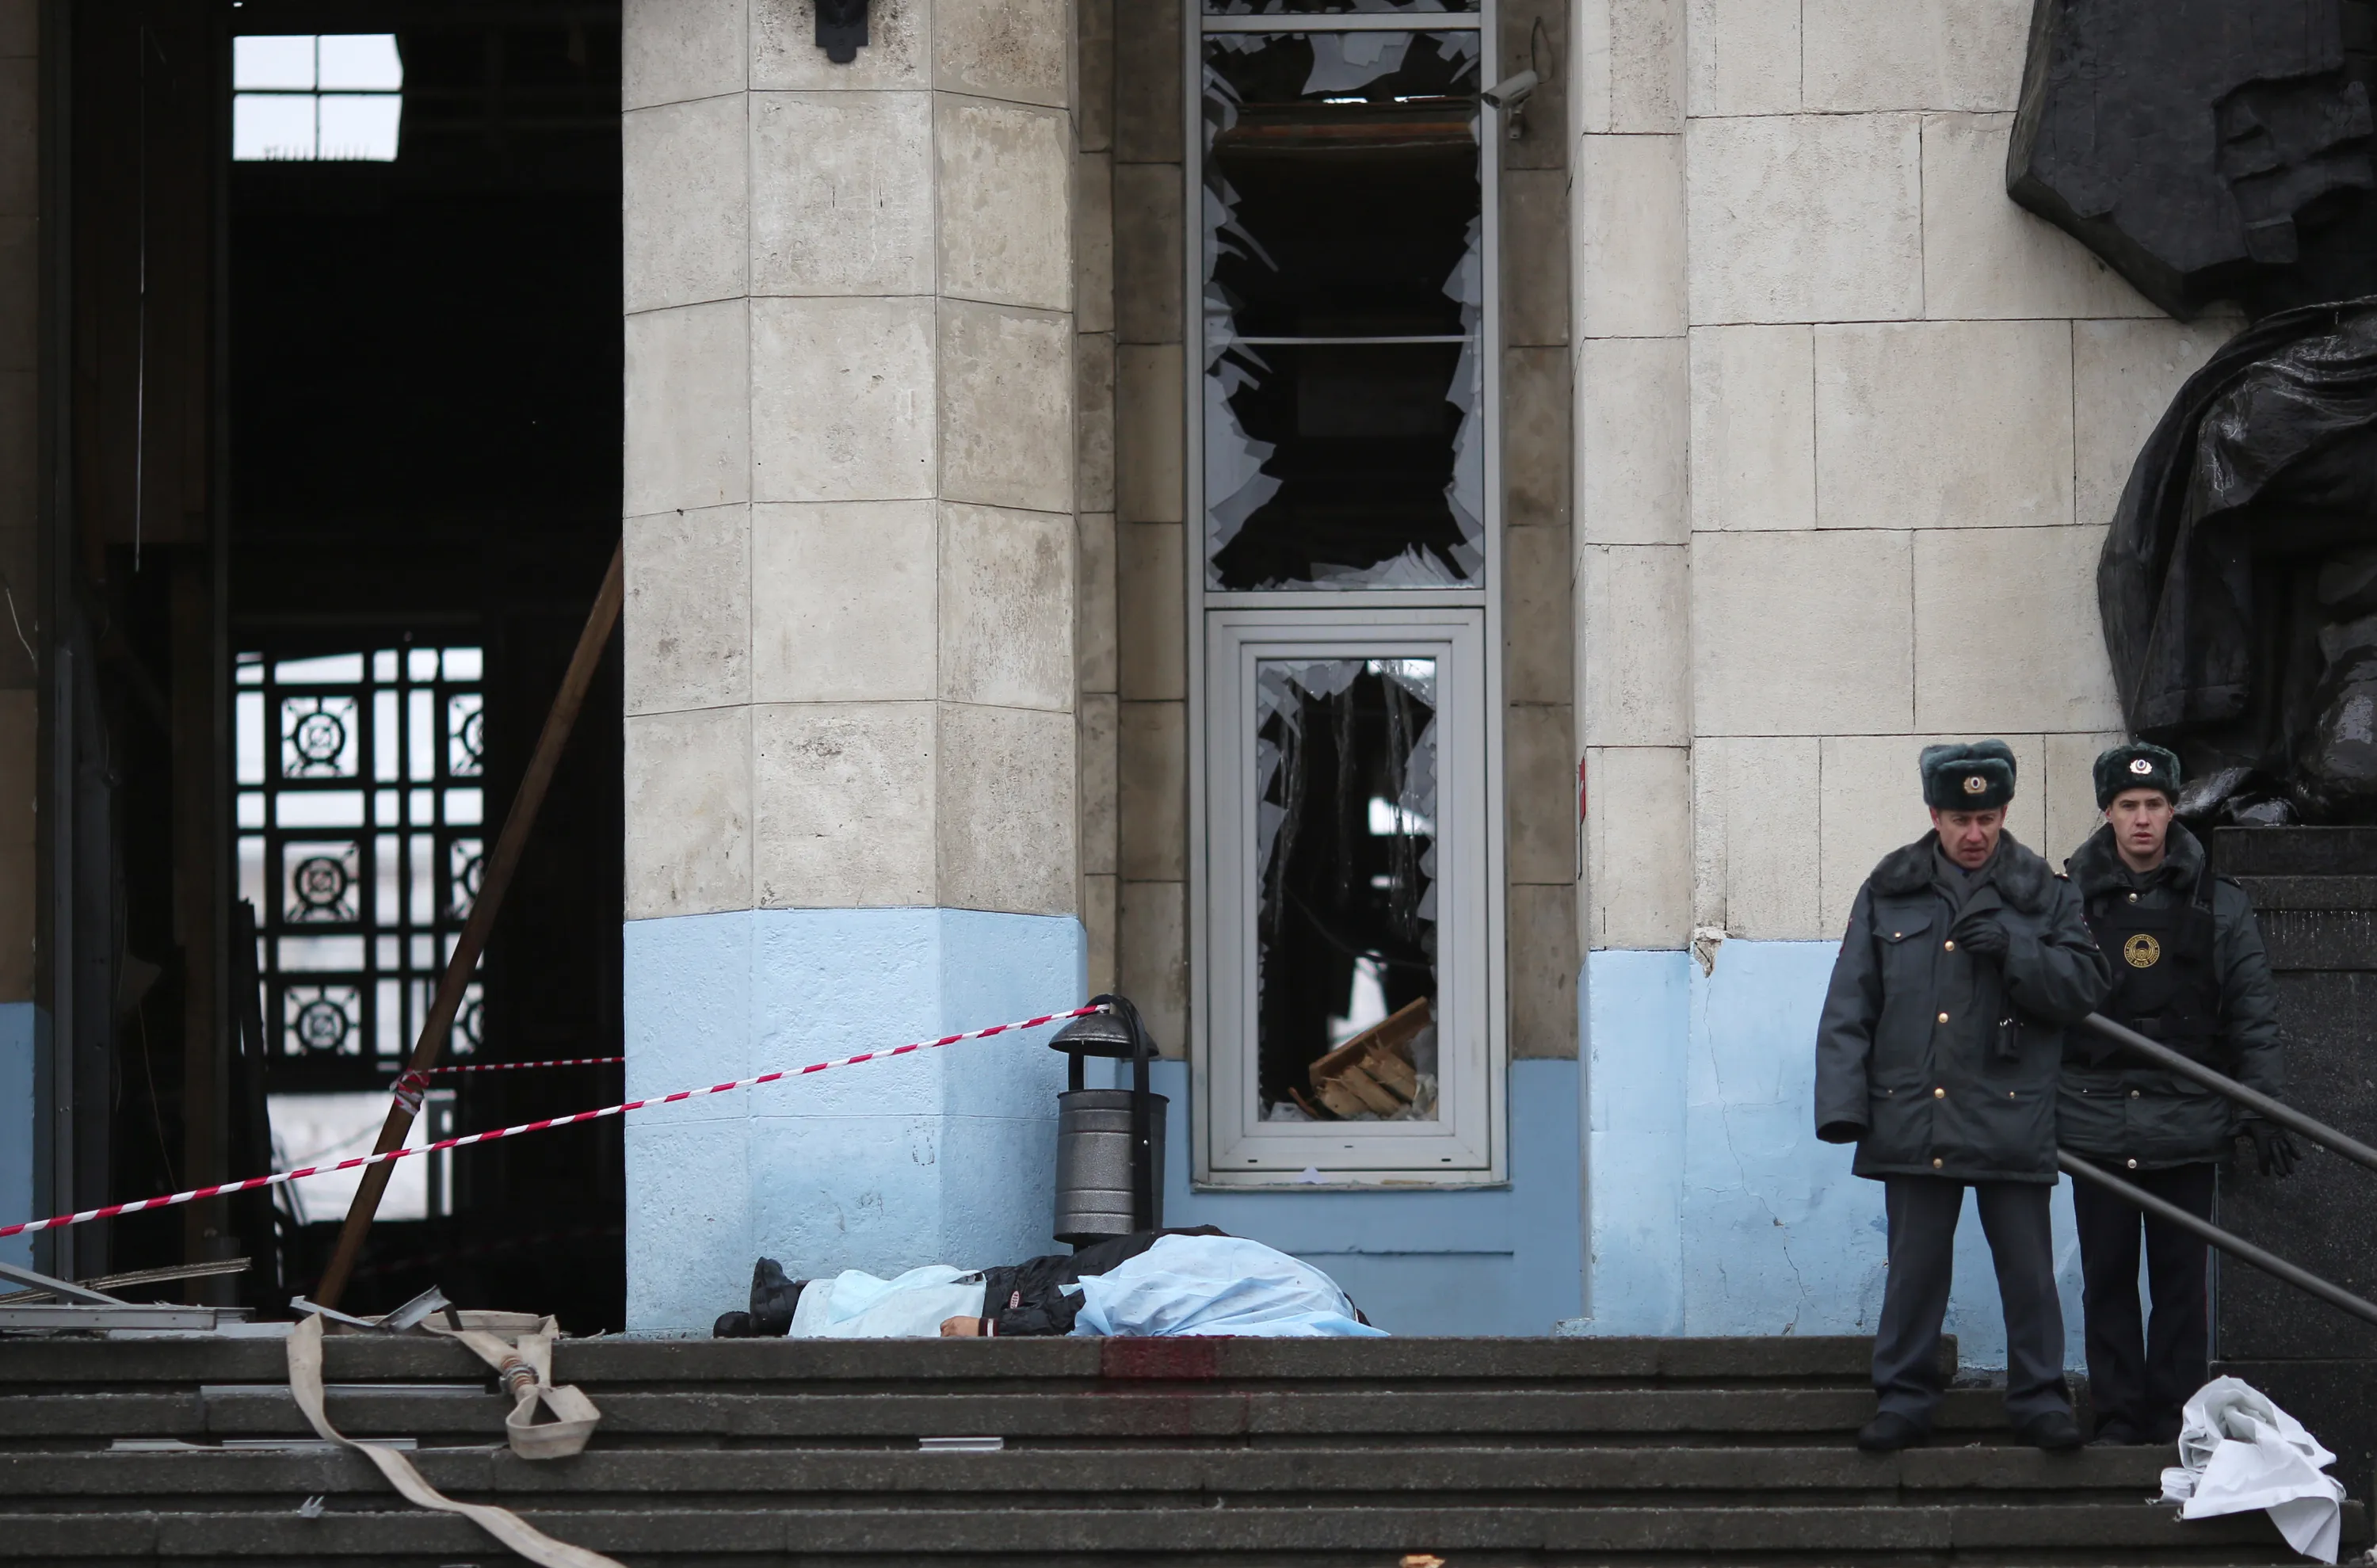 Во сколько произошел теракт вчера. 29 Декабря 2013 Волгоград теракт. Теракт в Волгограде 2013 вокзал. Взрыв в Волгограде на вокзале 29.12.2013. Взрыв вокзала в Волгограде.